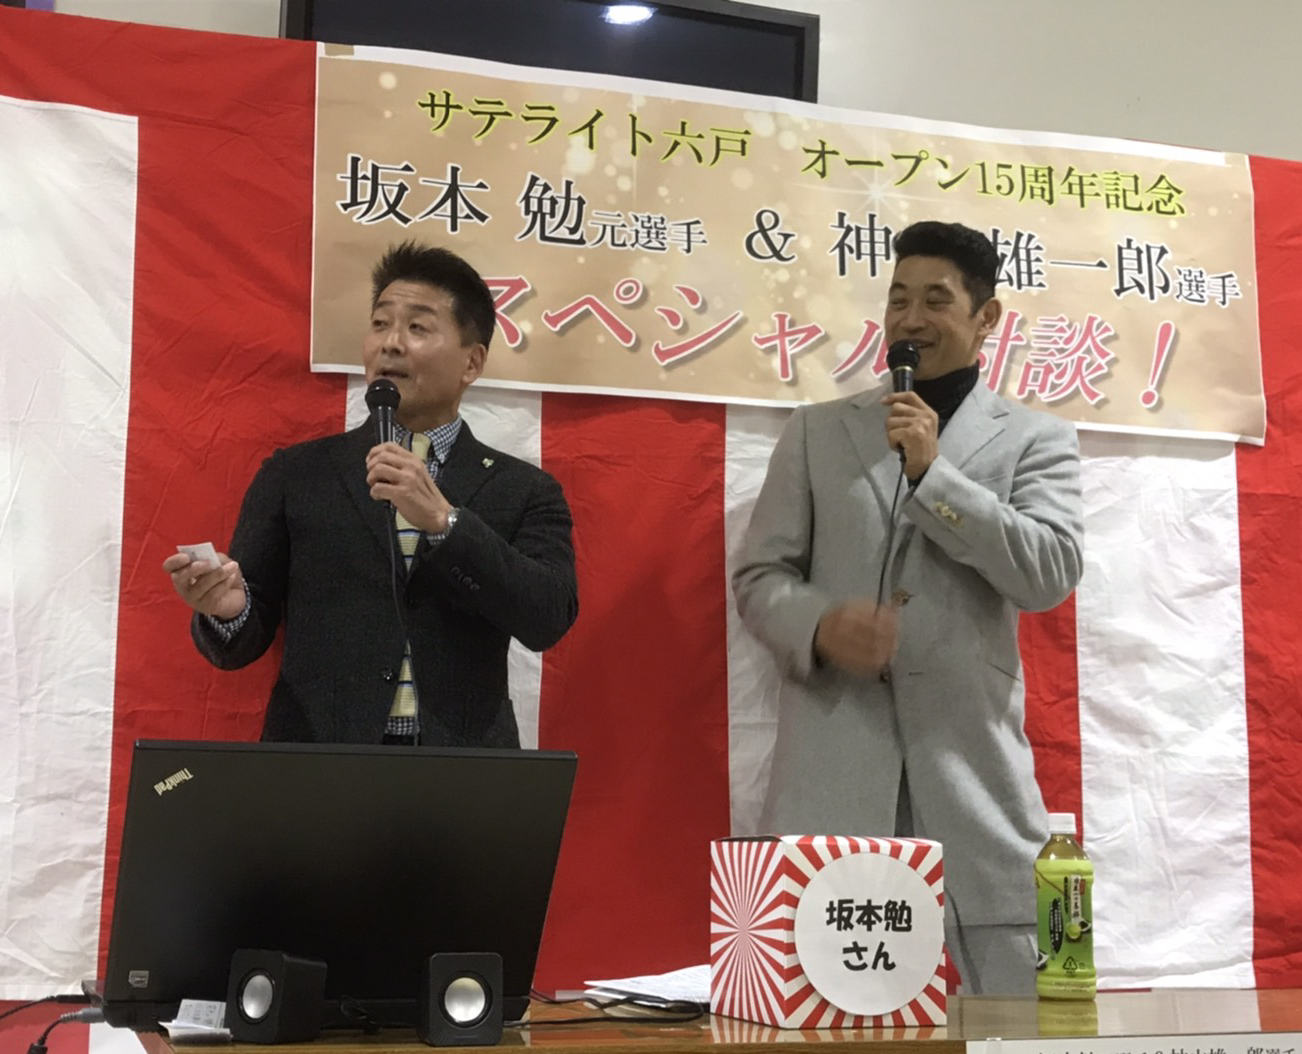 サテライト六戸ホームページ 坂本元選手と神山選手のトークショーが行われました